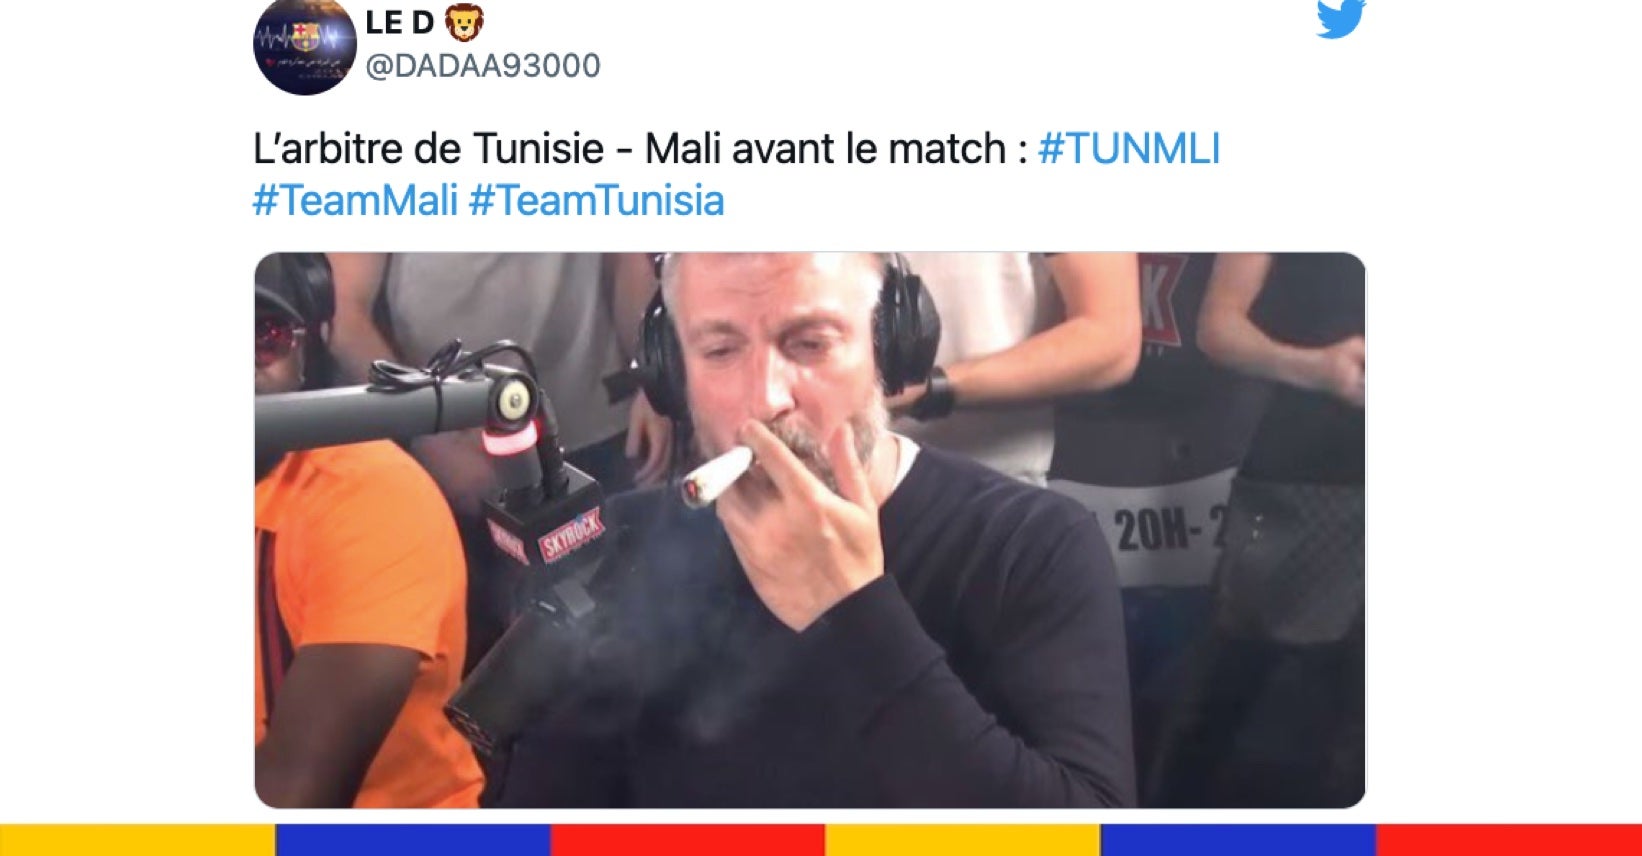 Le grand n'importe quoi des réseaux sociaux : arbitre de Tunisie-Mali